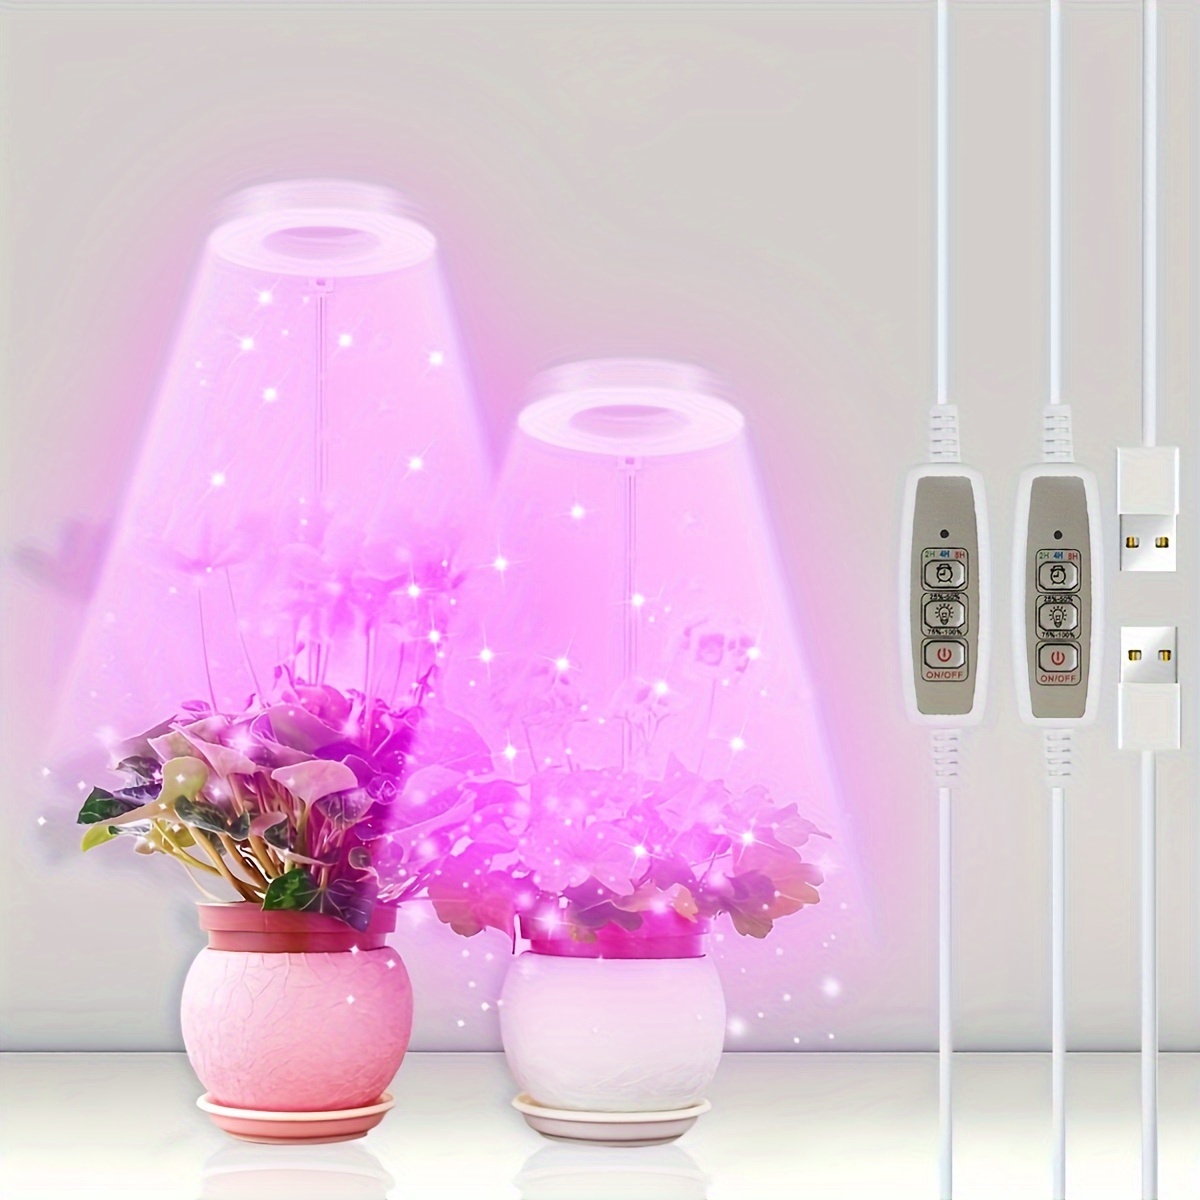 Lampe LED pour culture de plantes, USB, spectre complet, intensité réglable  à 5 niveaux et minuterie, éclairage pour tente/chambre de culture de fleurs  - AliExpress